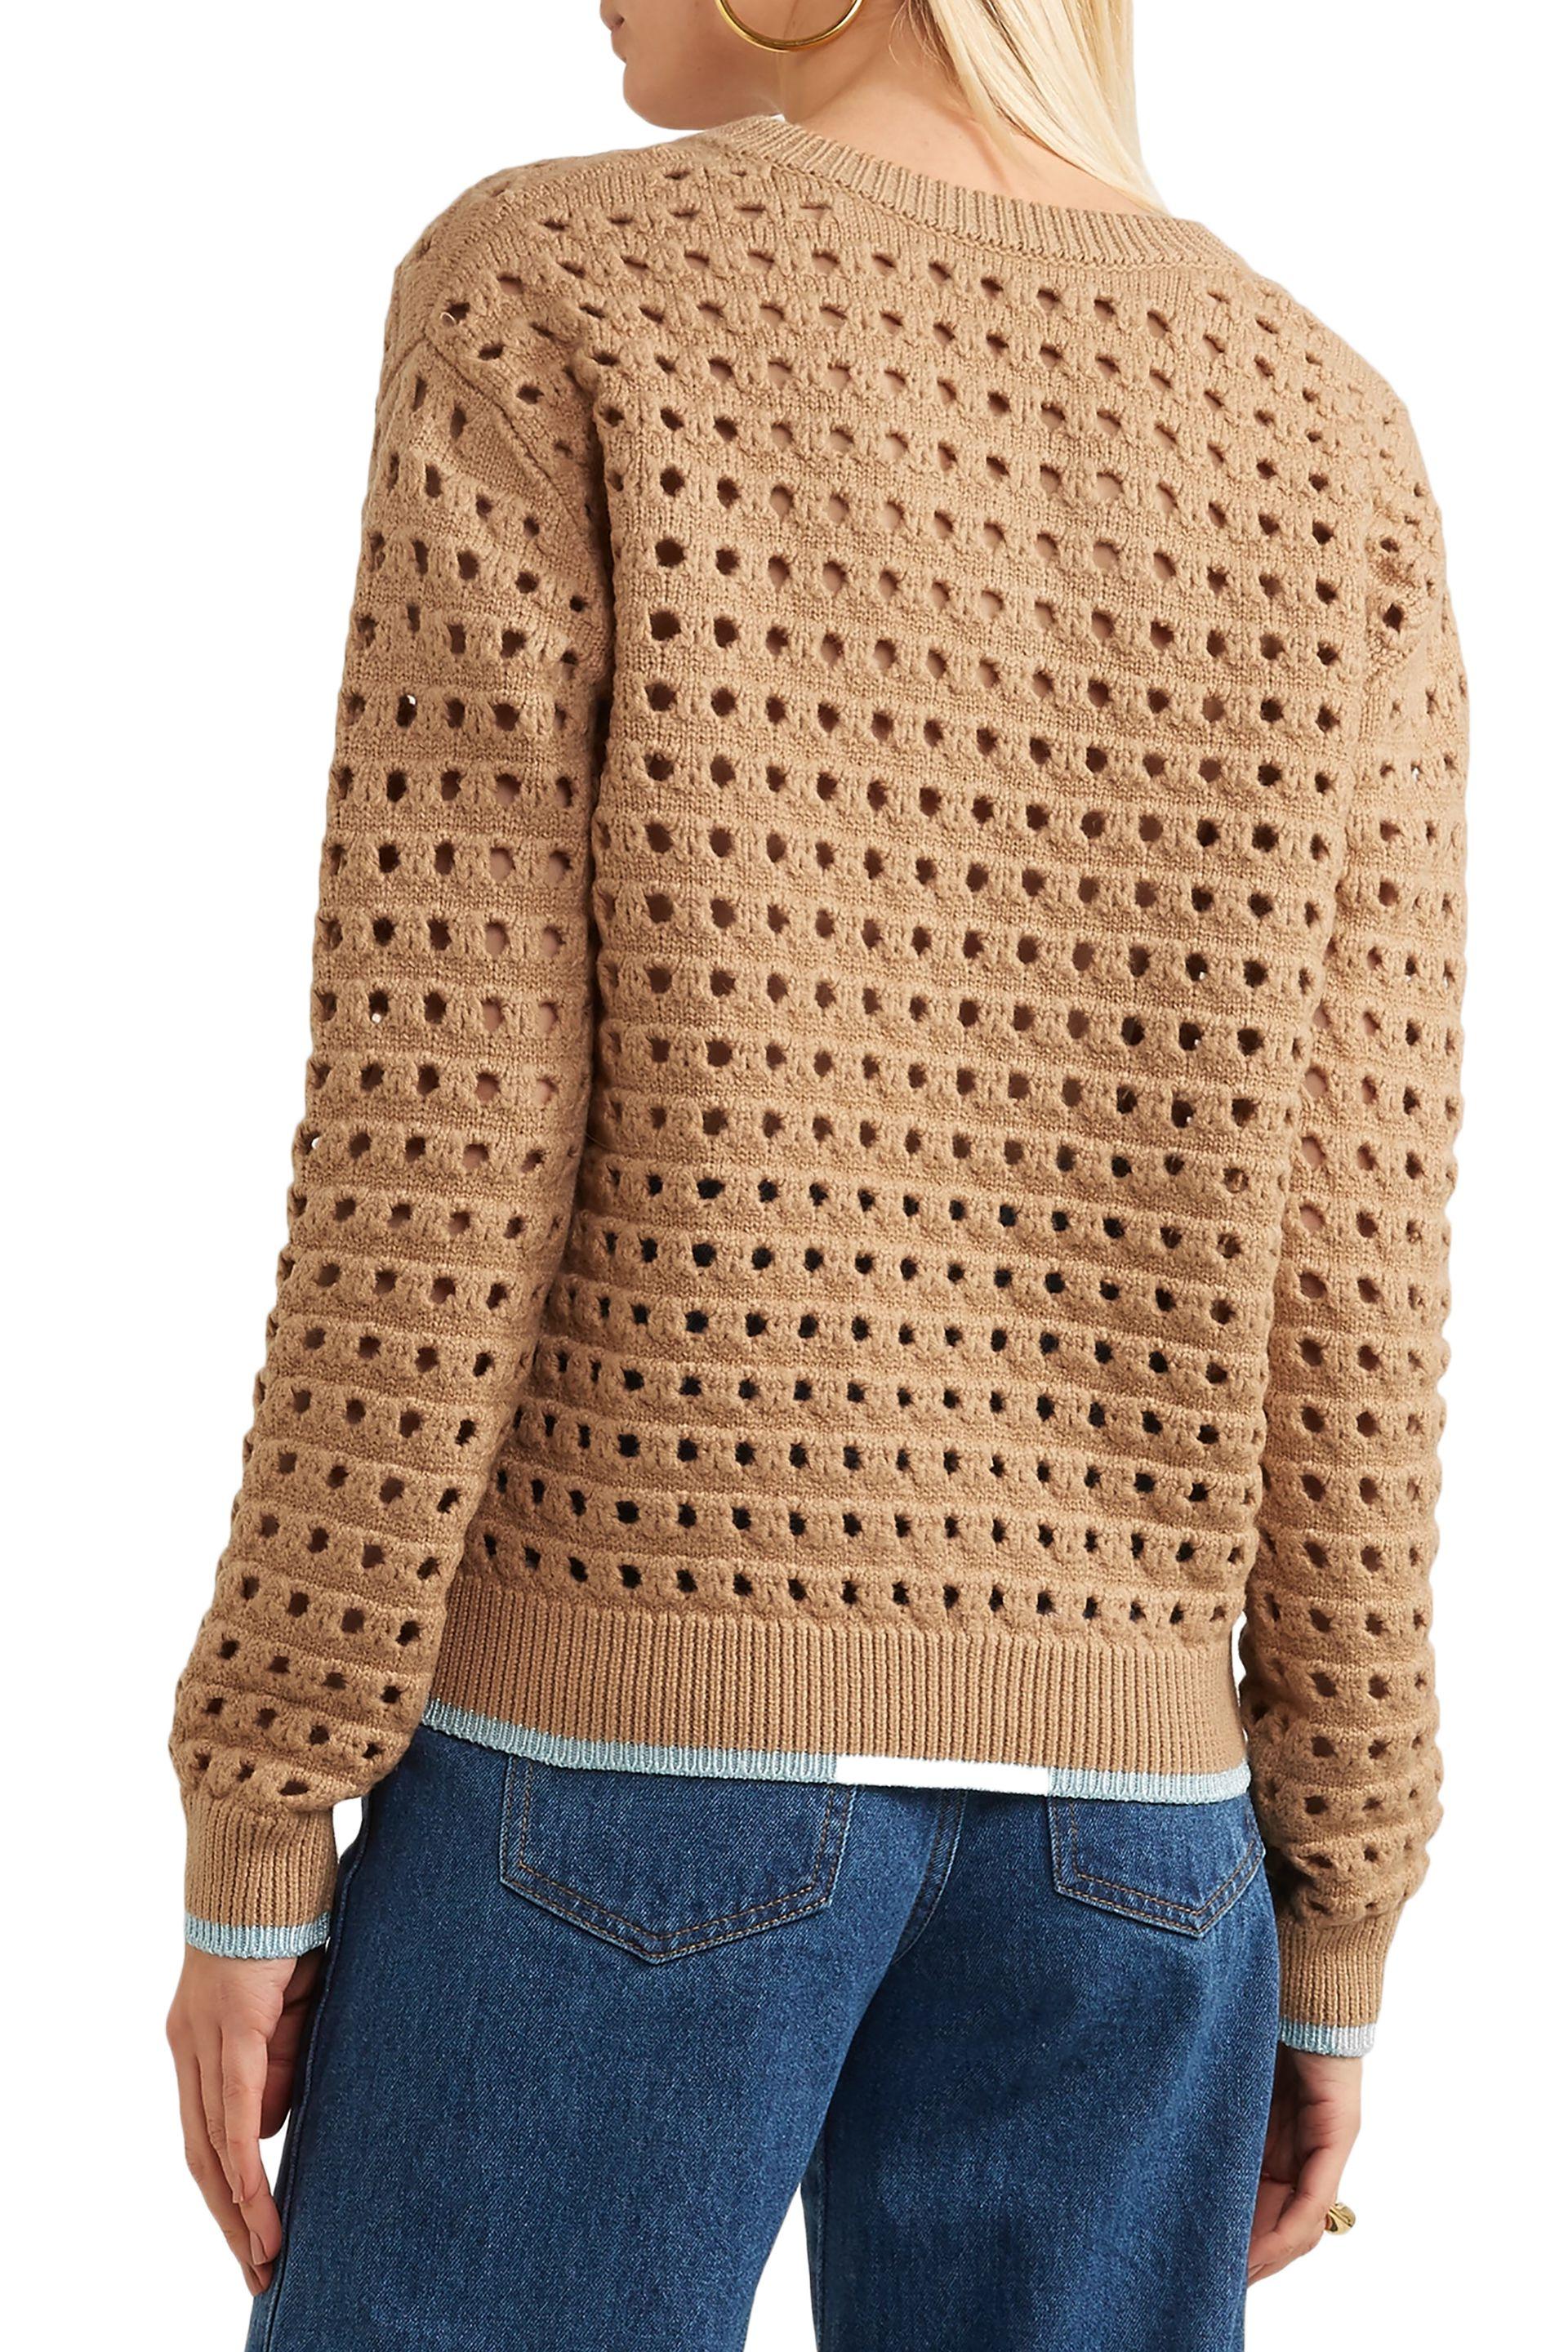 Victoria Beckham Open-knit Wool-blend Sweater Light Brown - Lyst